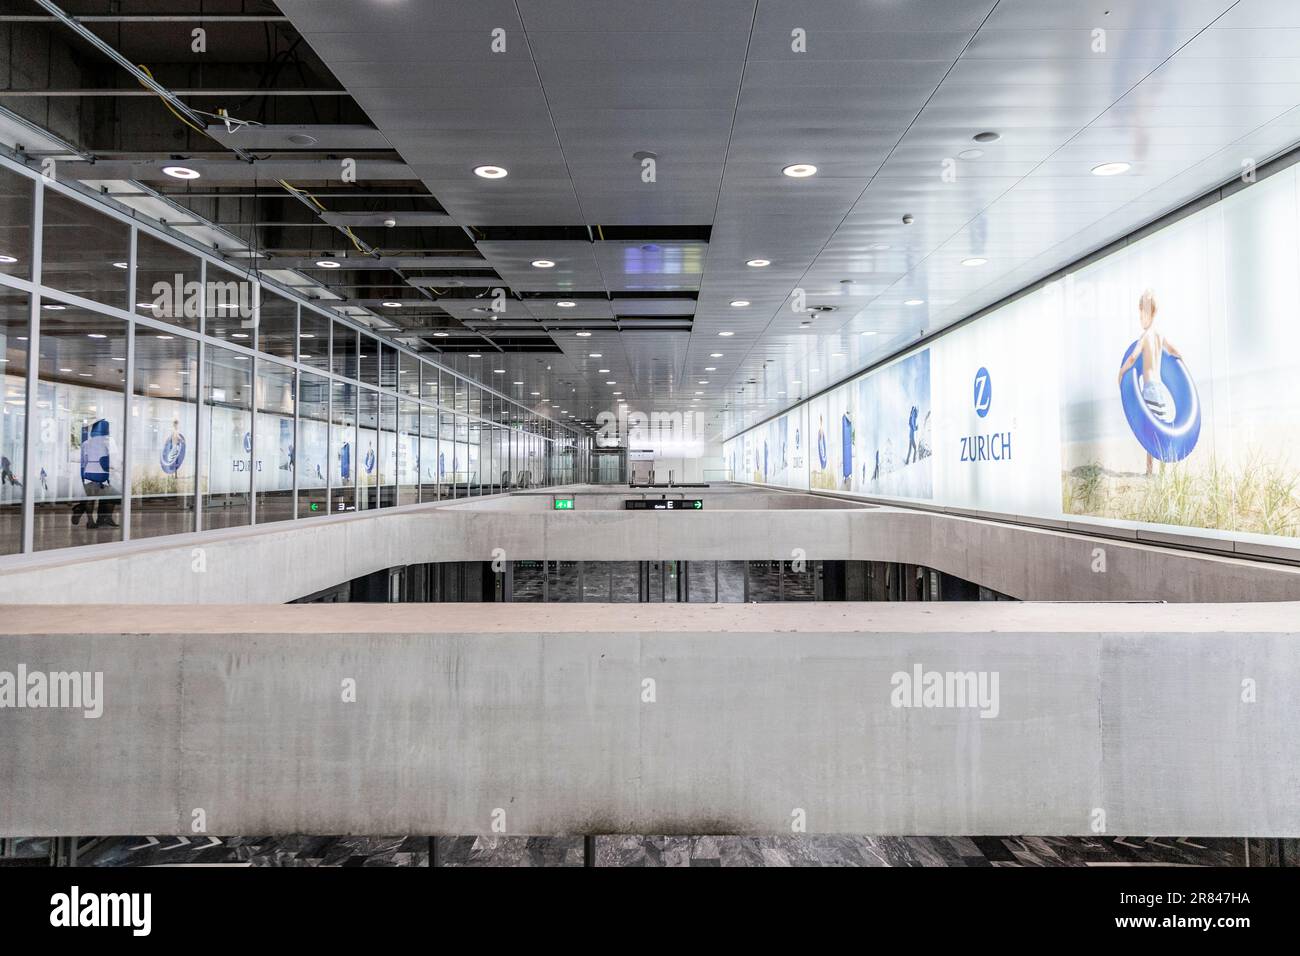 Intérieur de l'aéroport de Zurich, Suisse Banque D'Images